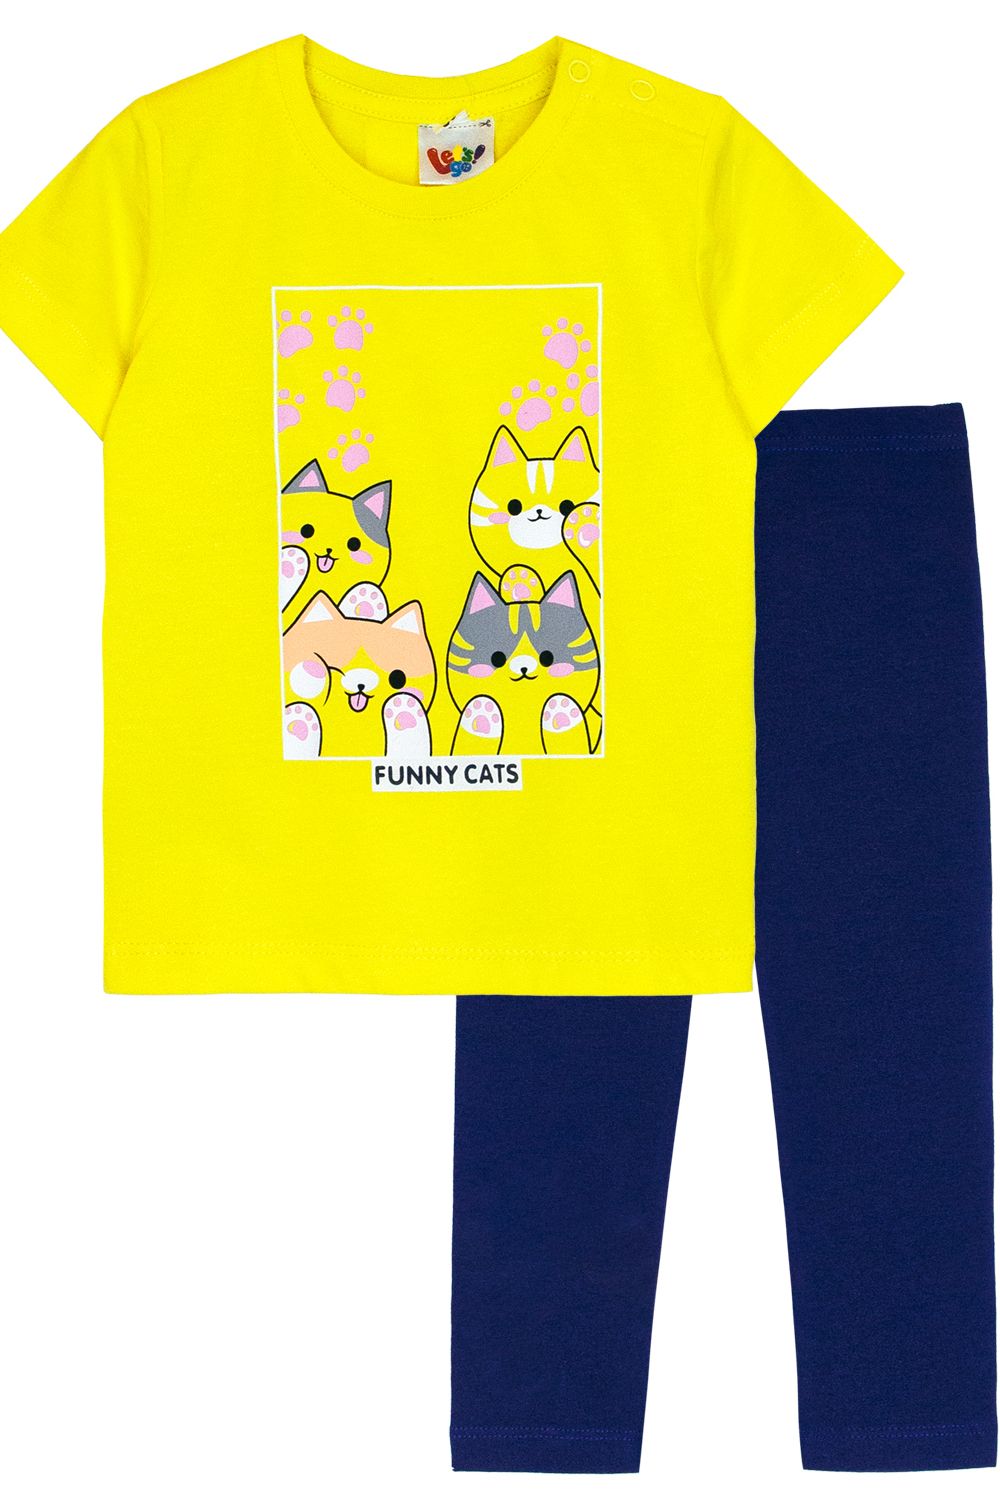 Комплект для девочки (футболка+лосины) 41135 (м) - желтый/т.синий